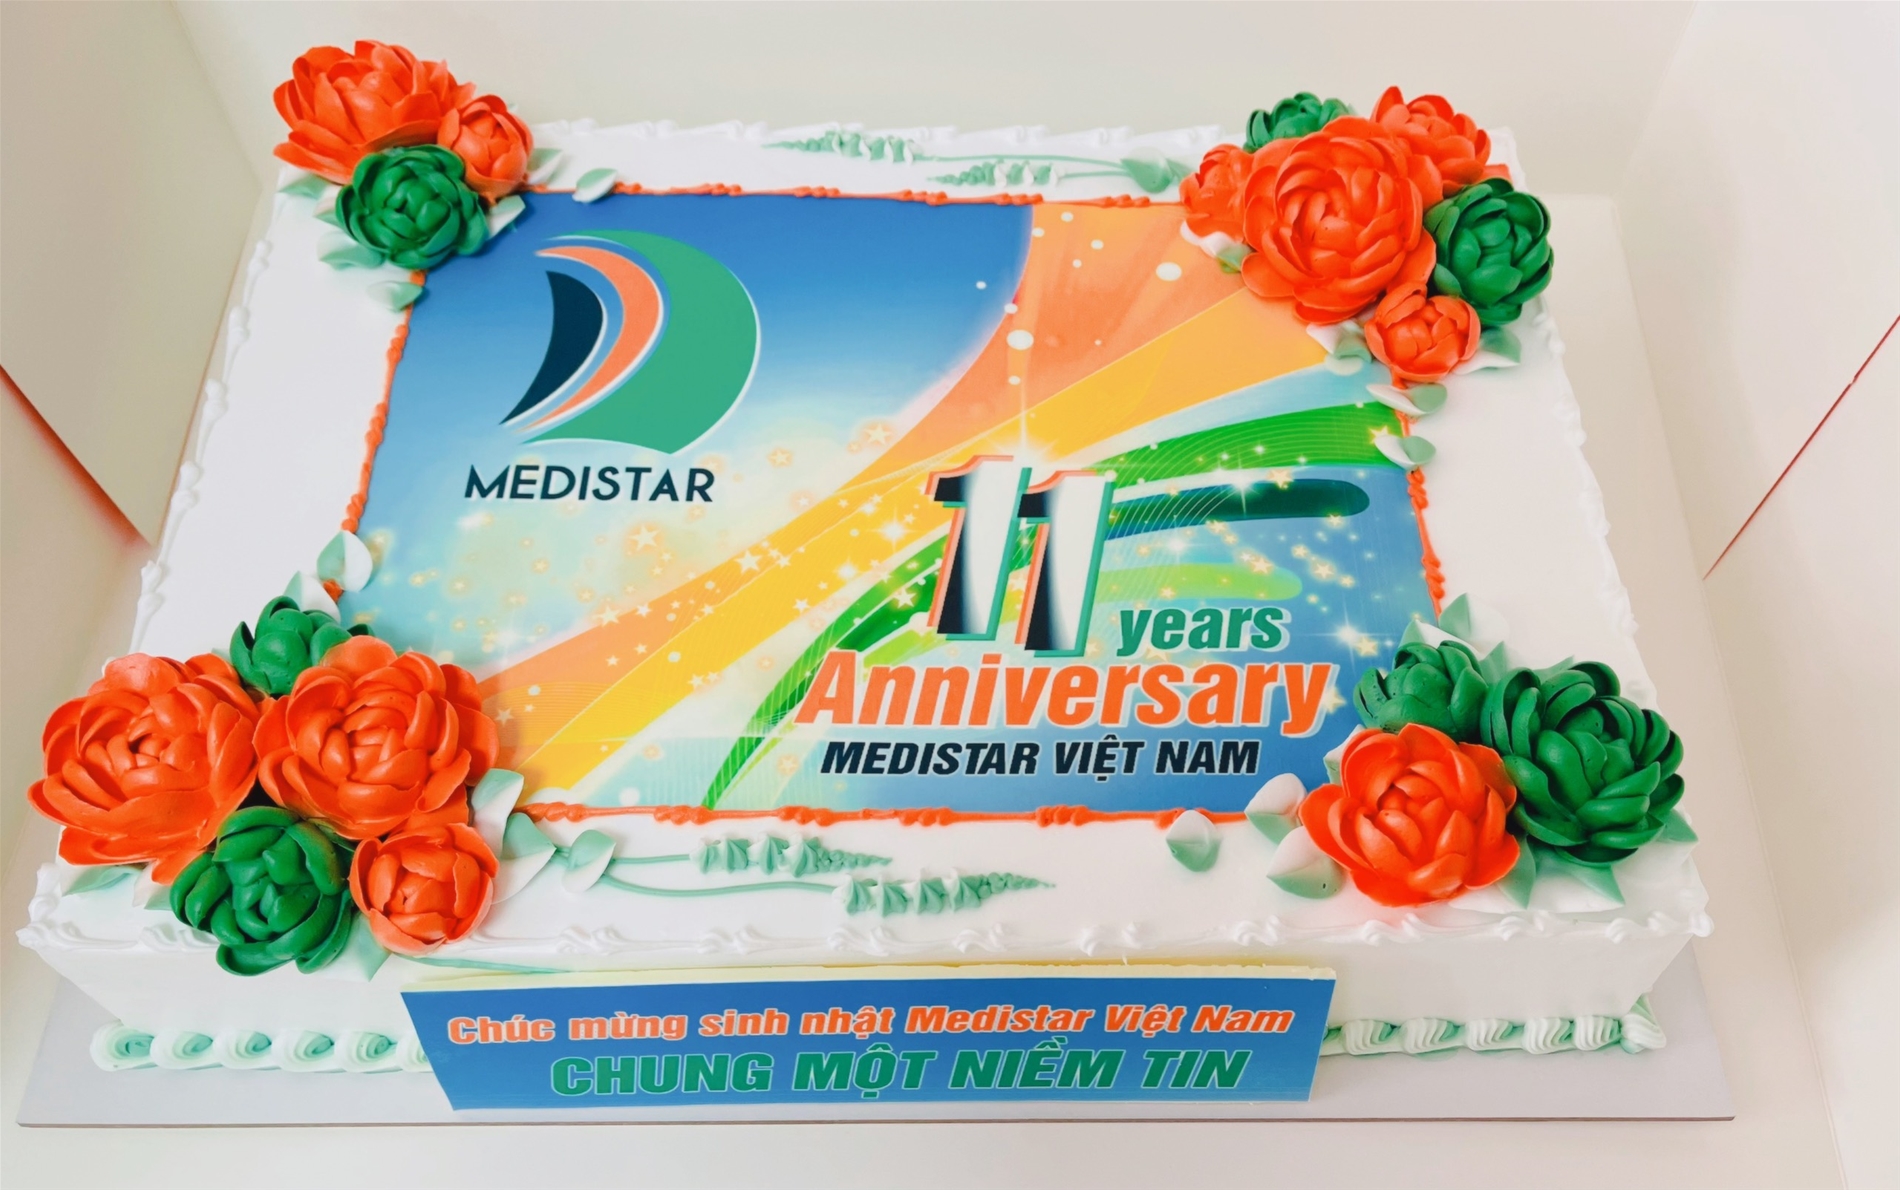 chúc mừng sinh nhật Medistar Việt Nam